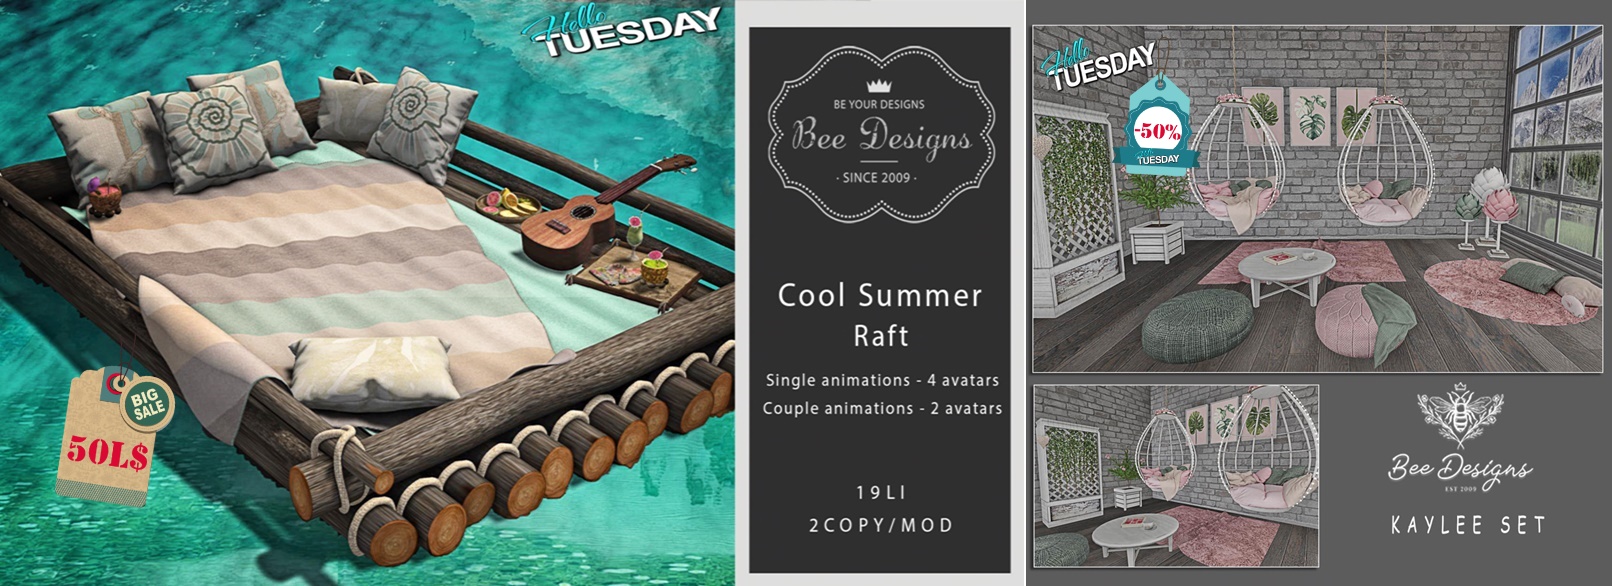 Bee Designs – Cool Summer Raft & Kaylee Set